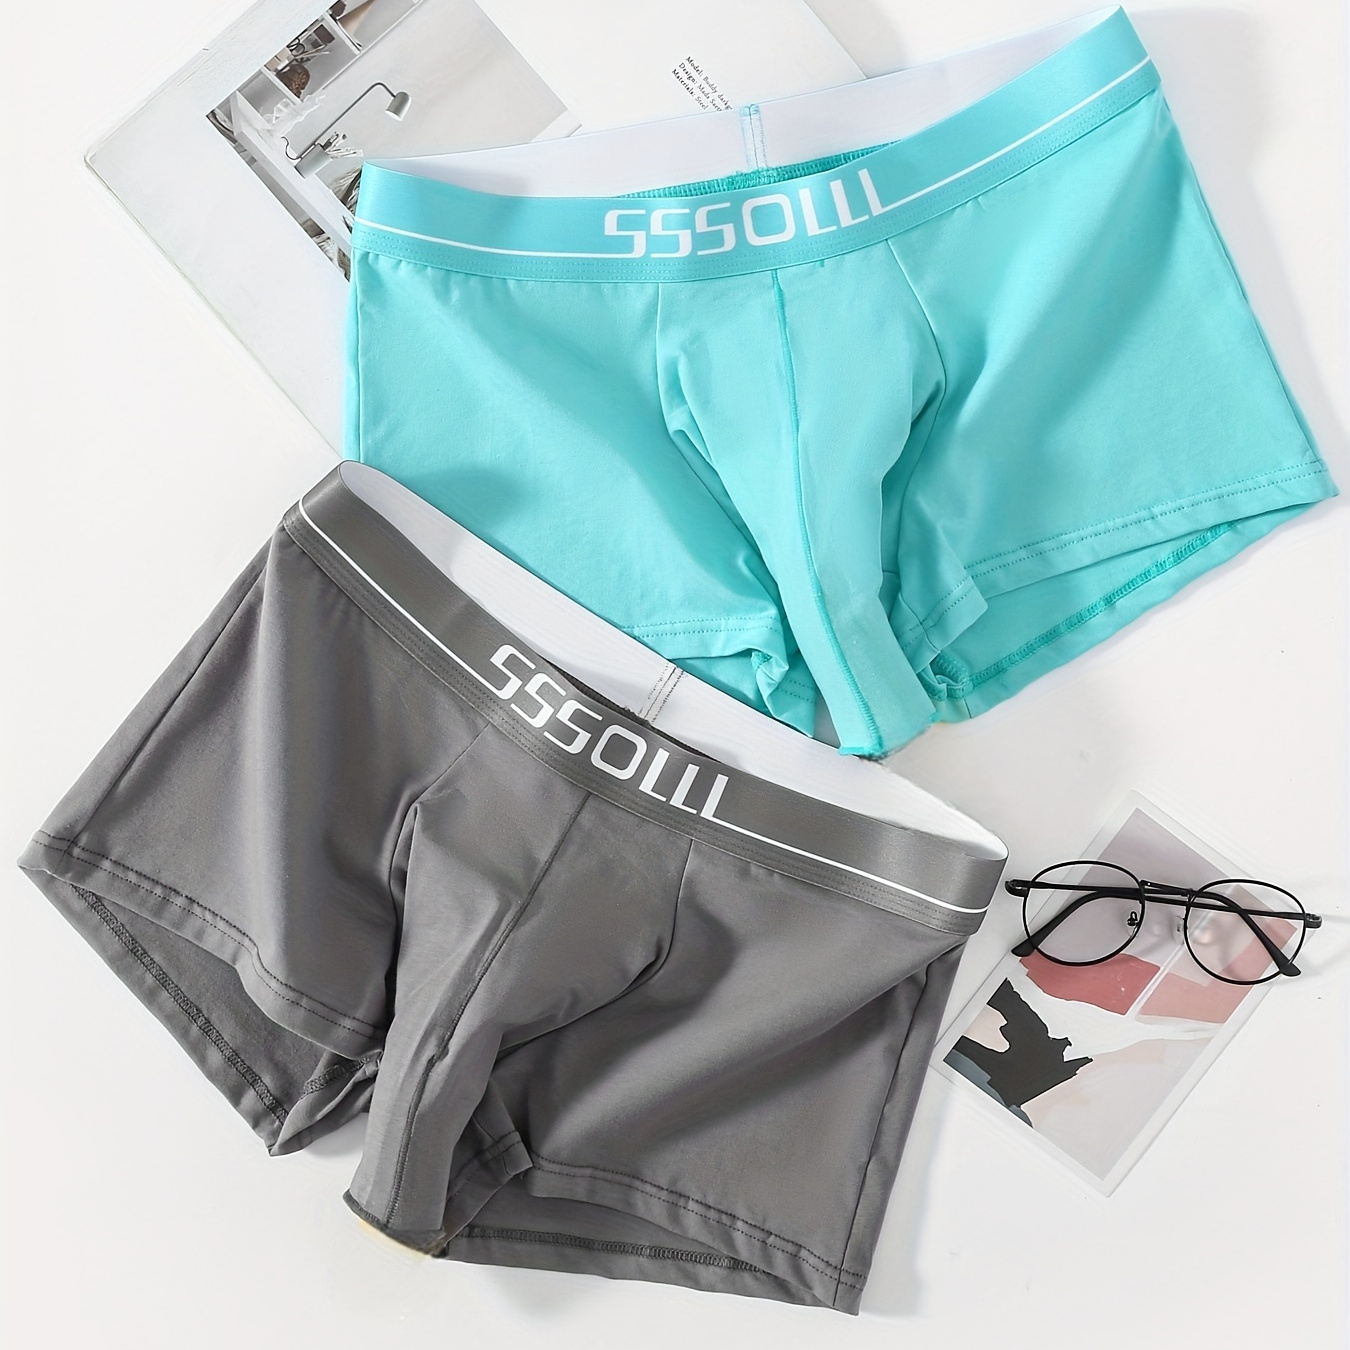 

2pcs Men's Underwear, Antibacterial Cotton Breathable Soft Comfy Boxer Briefs Shorts, Casual Plain Color Boxer Trunks